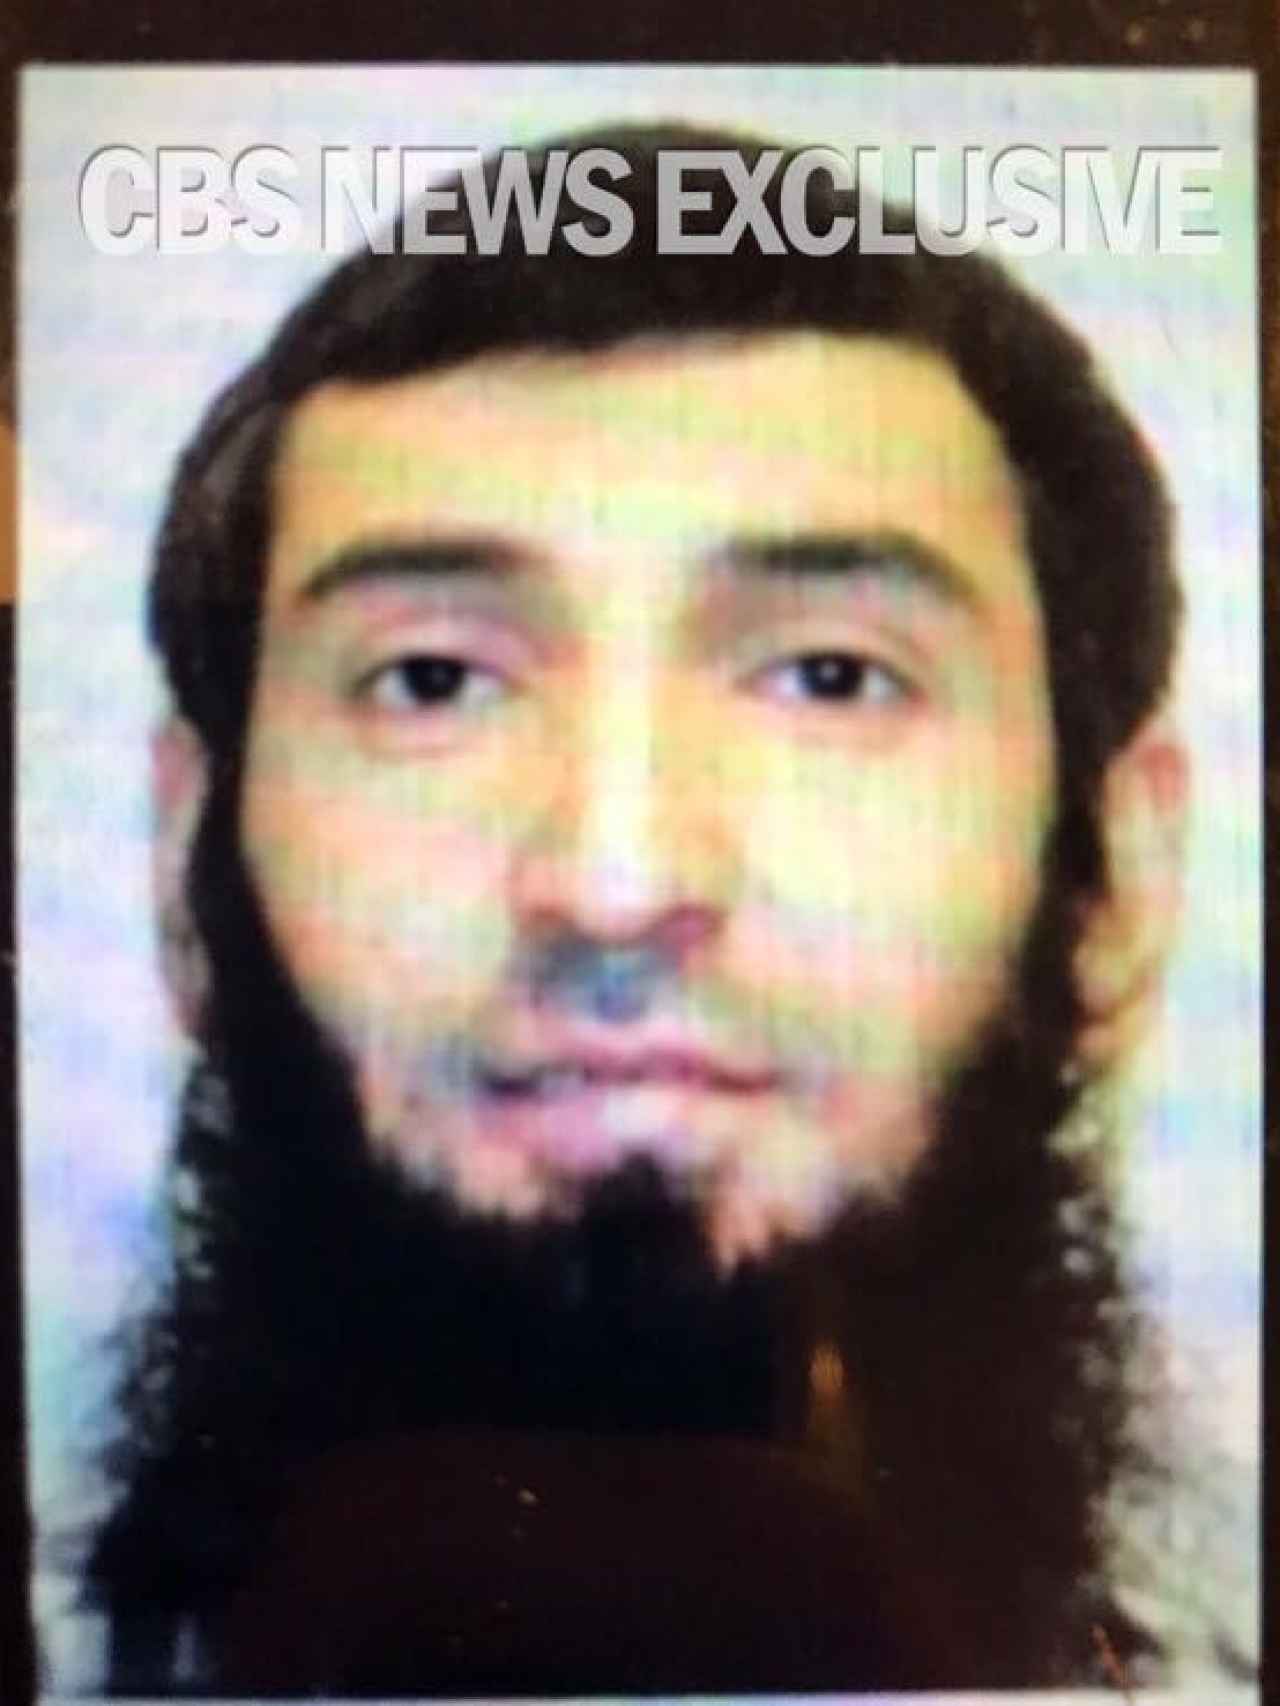 Imagen del terrorista de Nueva York difundida por la CBS.